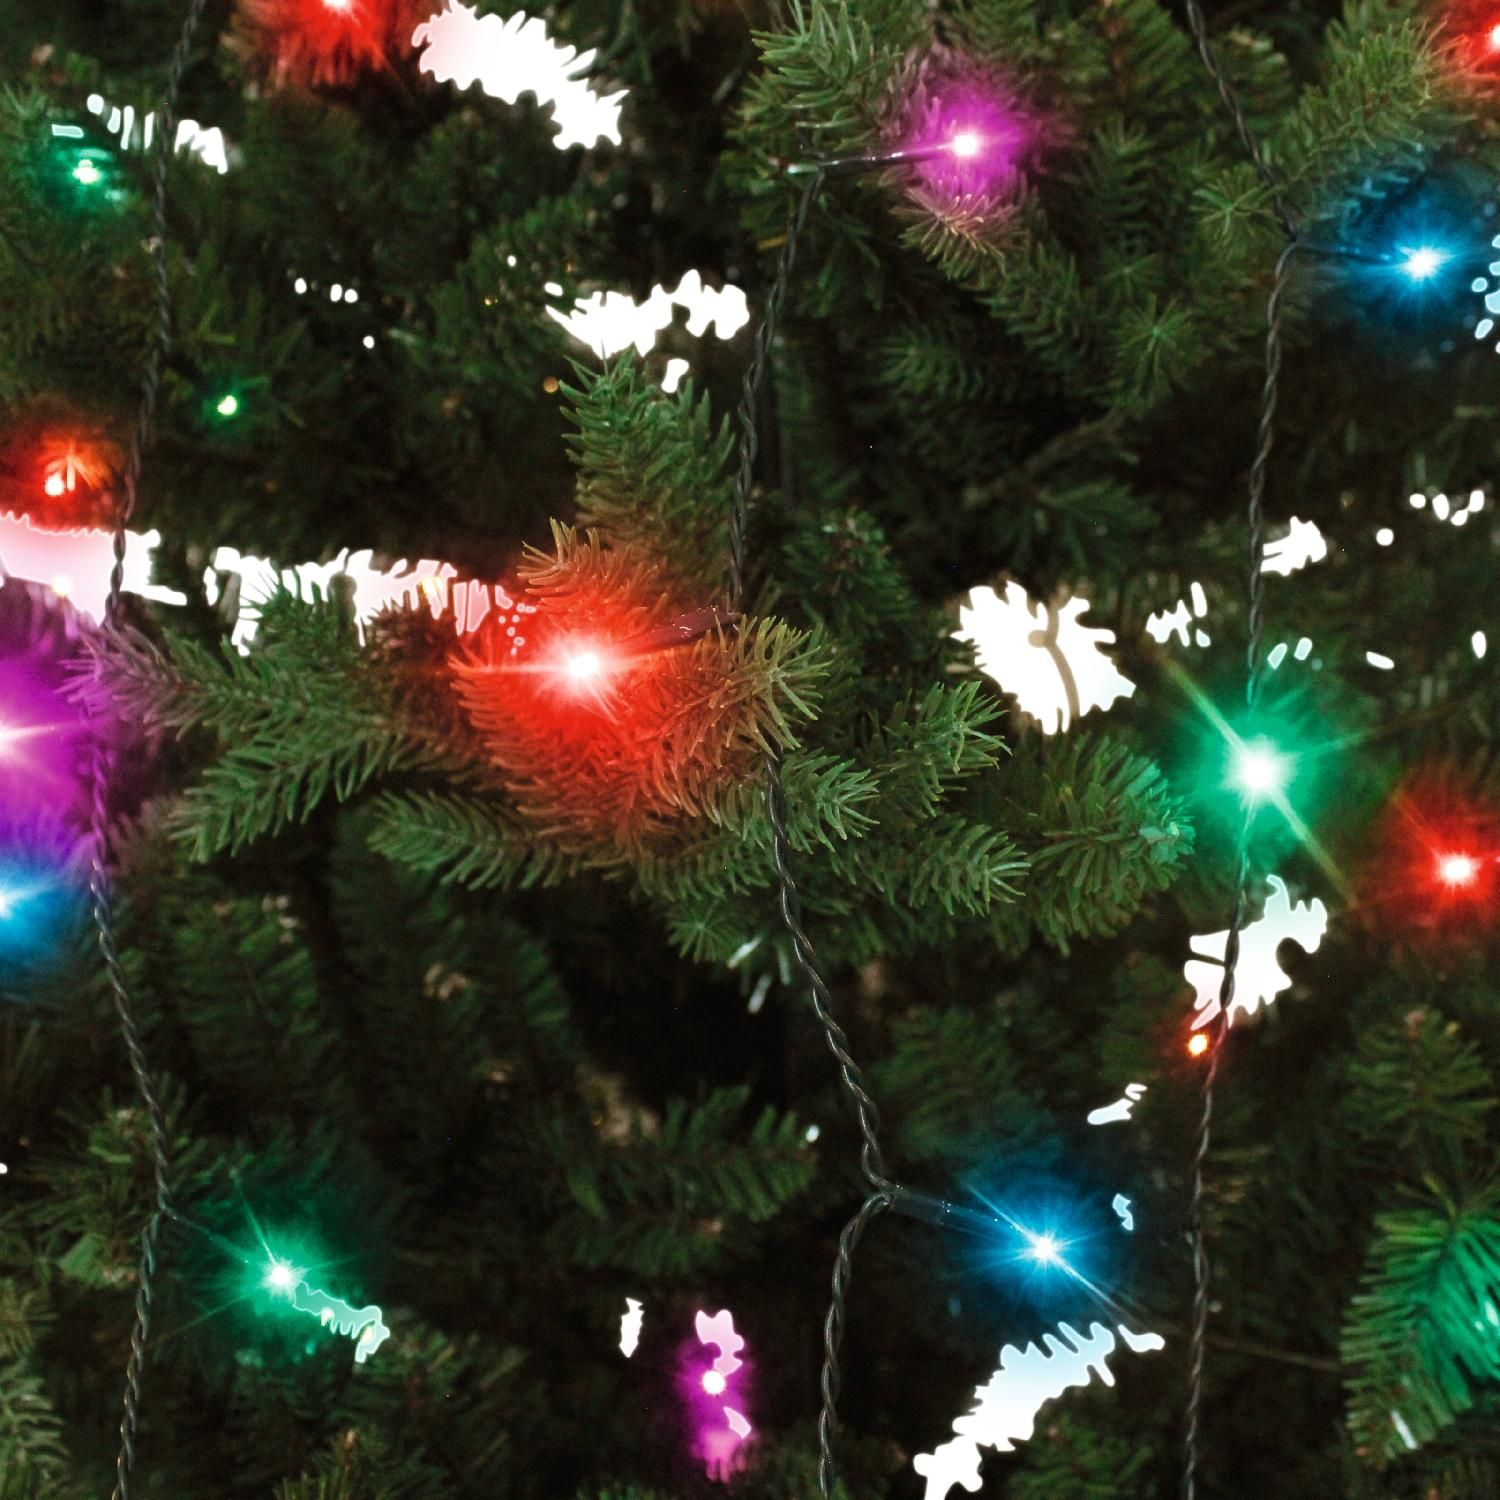 DELTACO SMART HOME schwarz Weihnachtsbaum-Lichterkette RGB Smarte Lichterkette